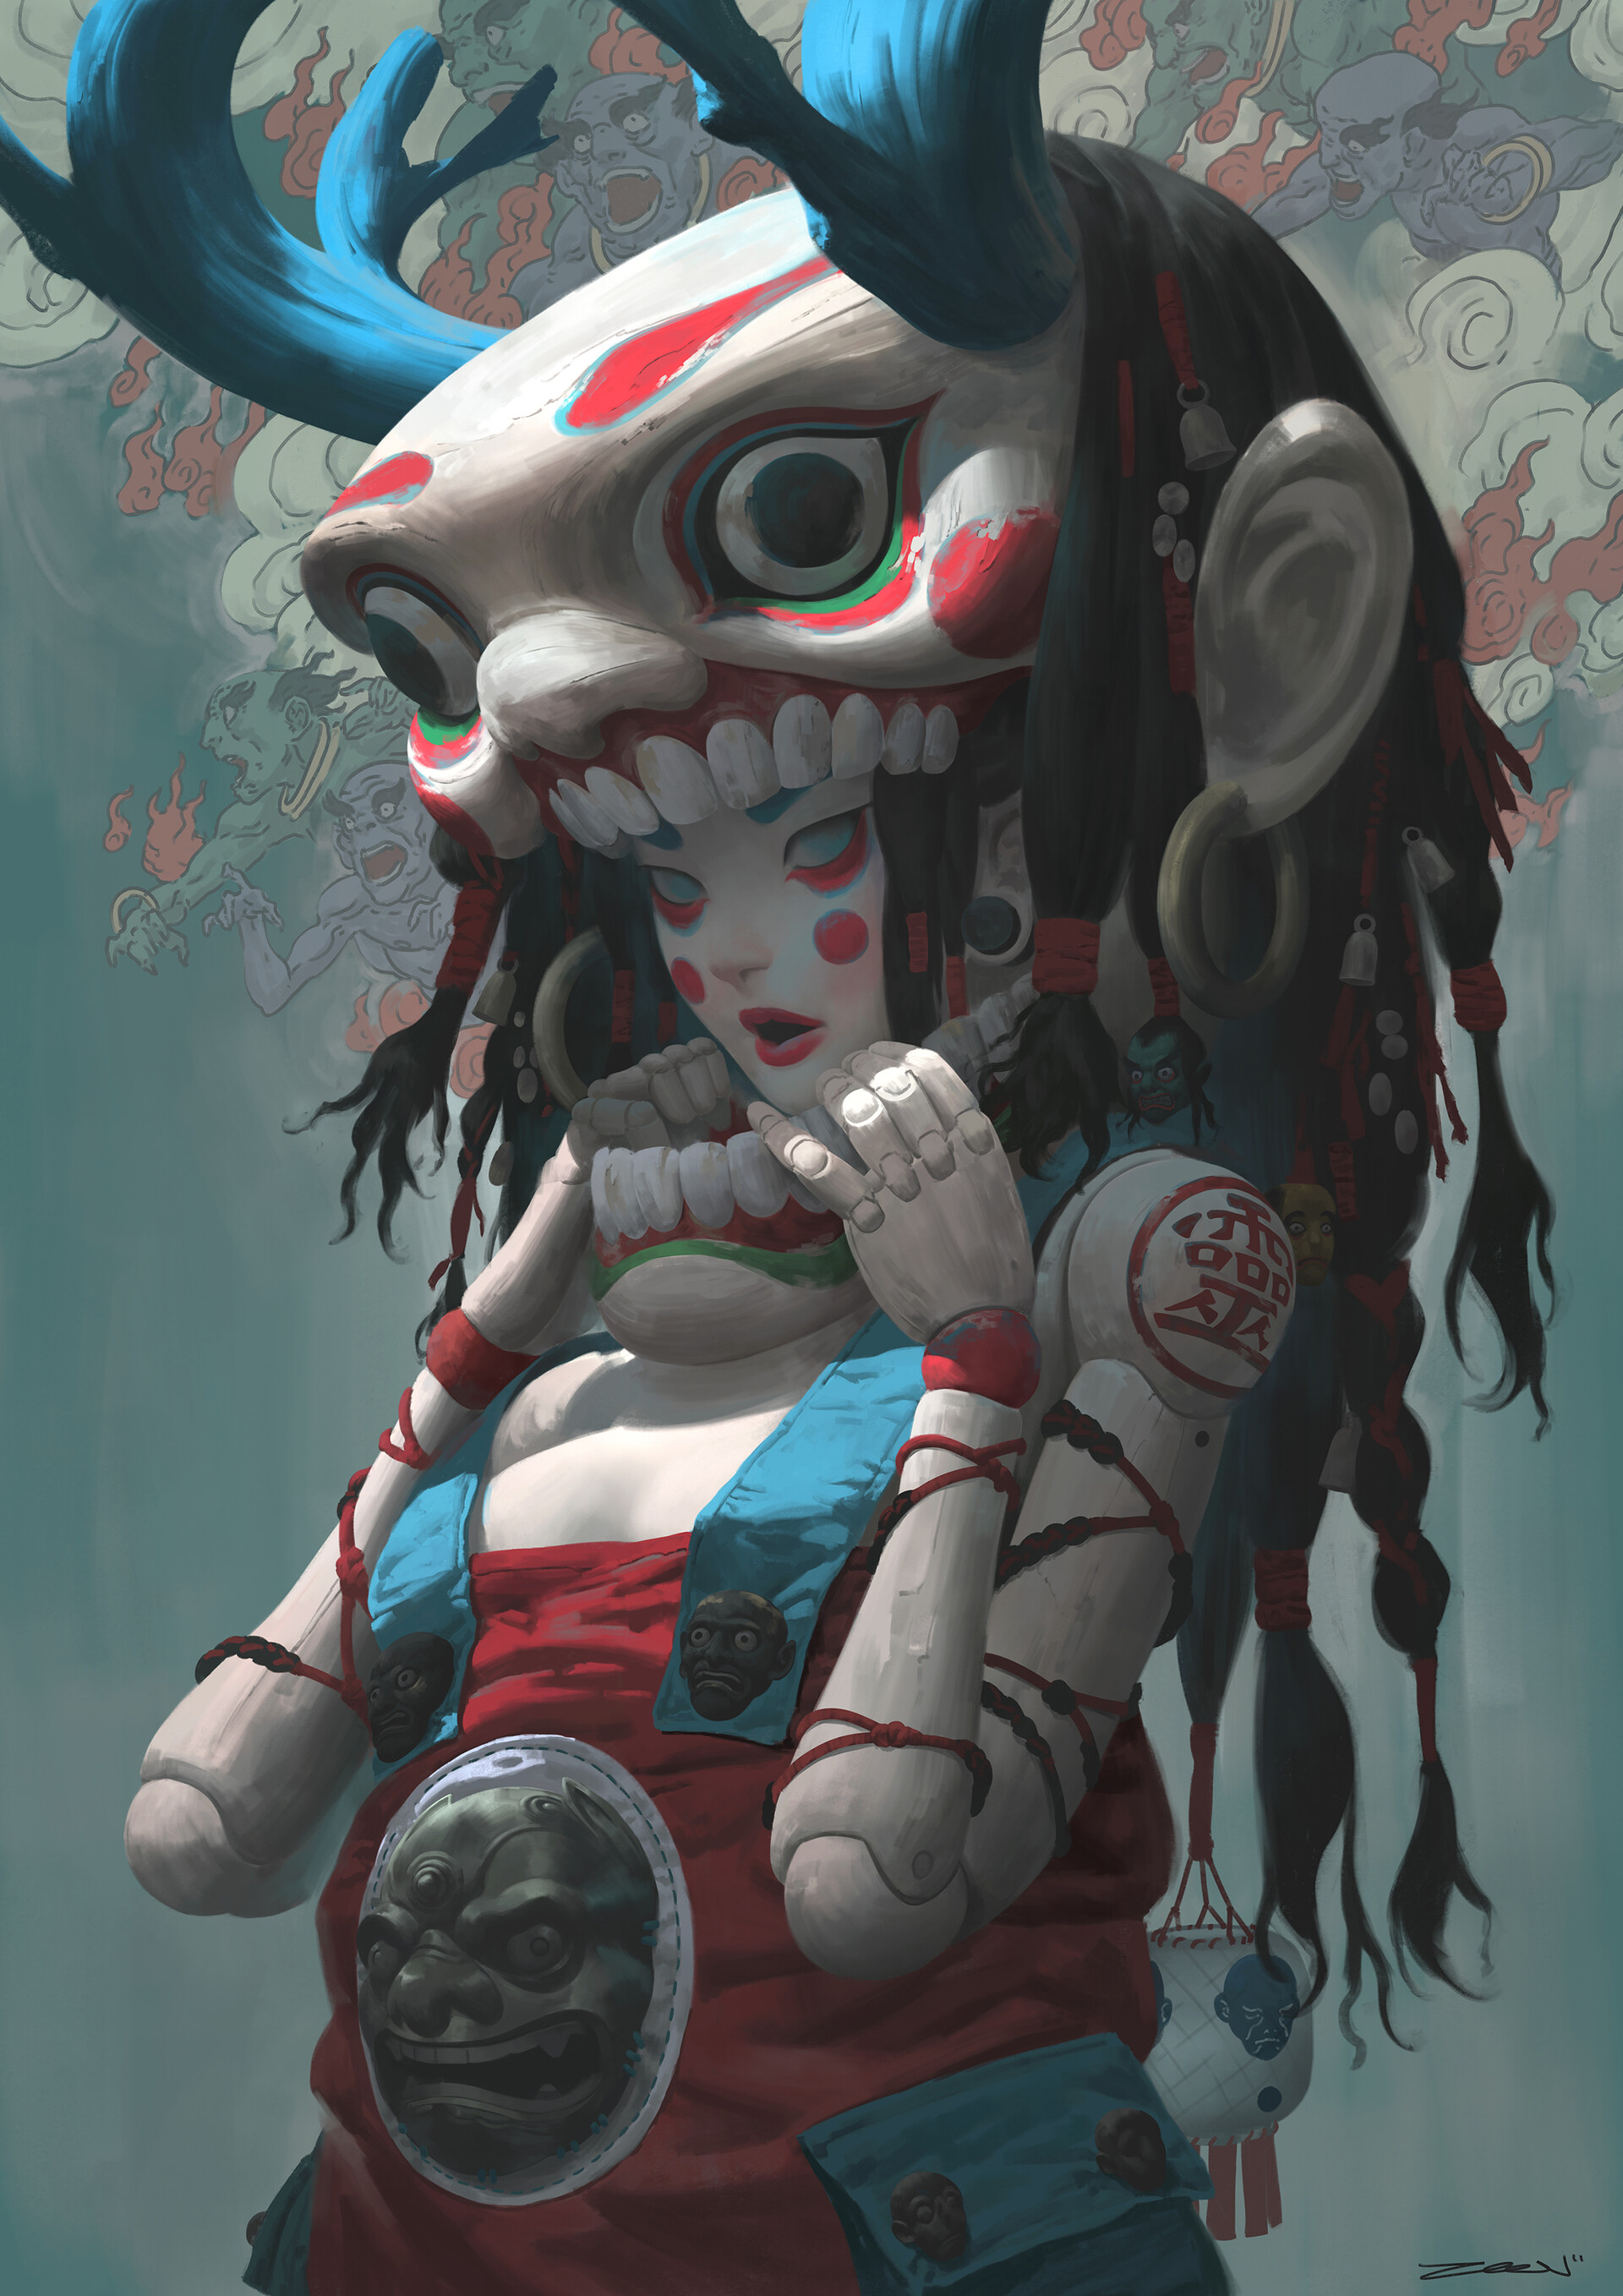 General 1920x2716 women eastern mask oni demon doll bells Zeen Chin digital art portrait display